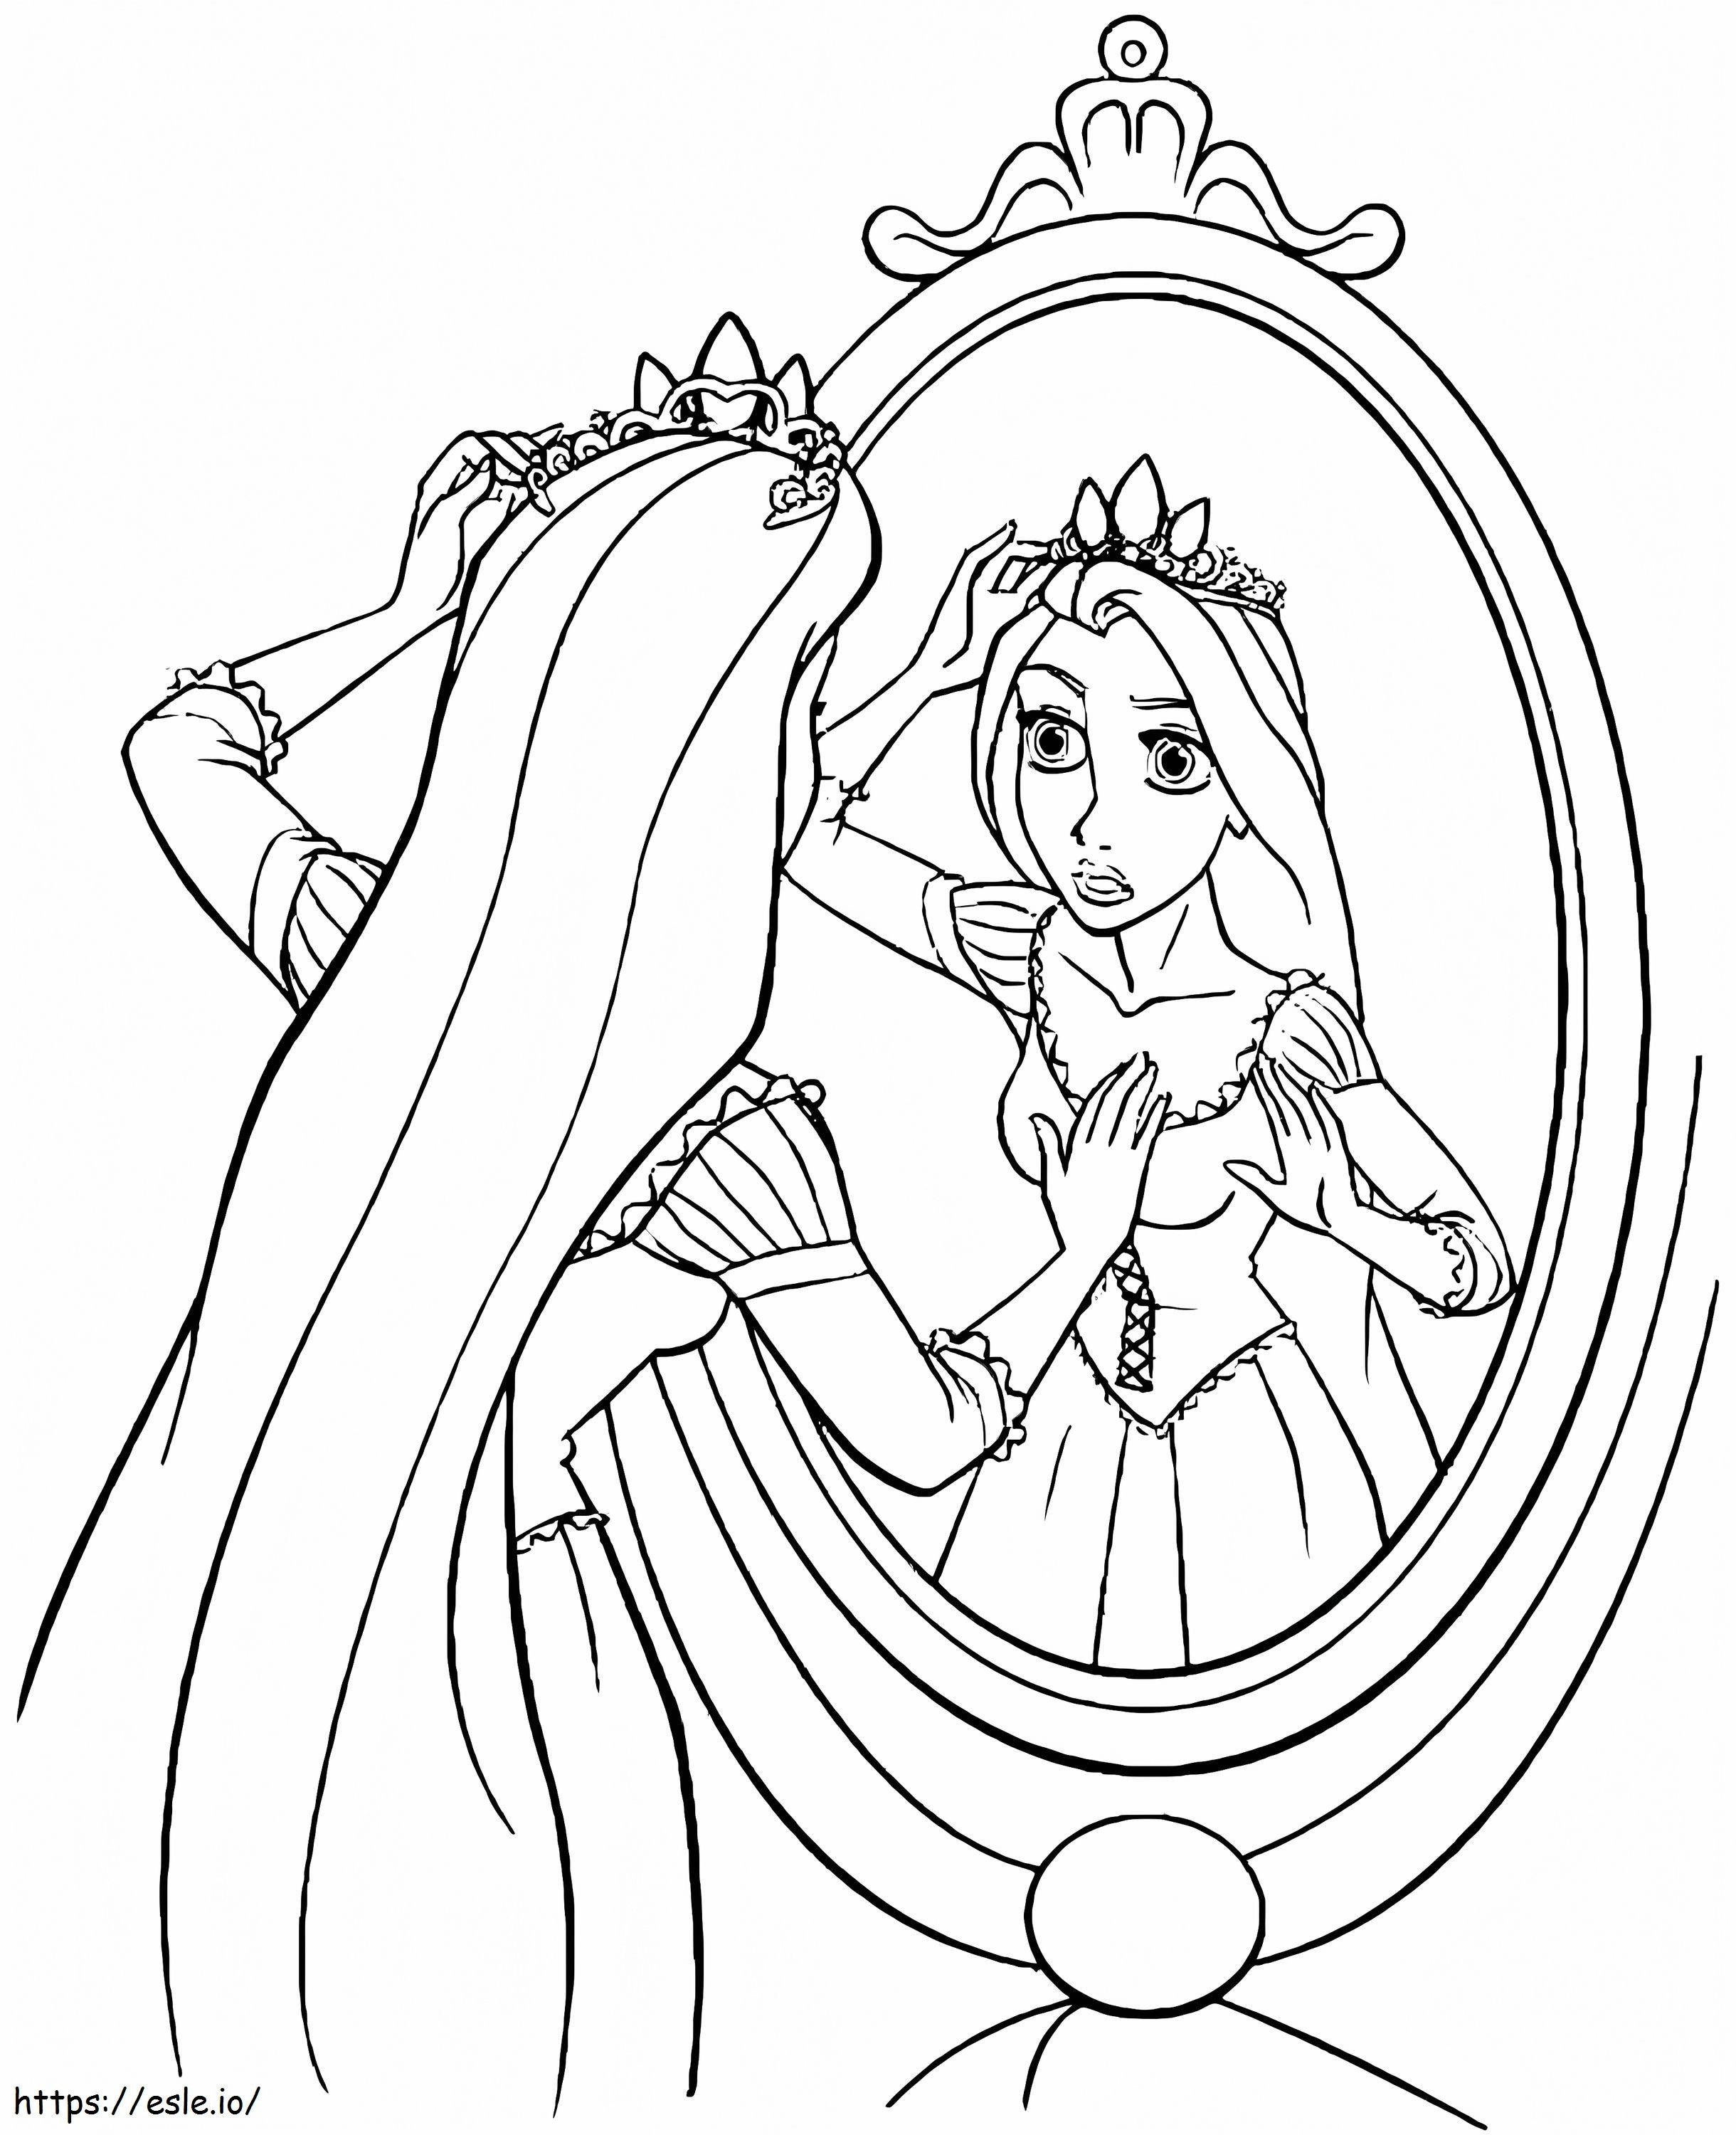 La principessa Rapunzel allo specchio da colorare